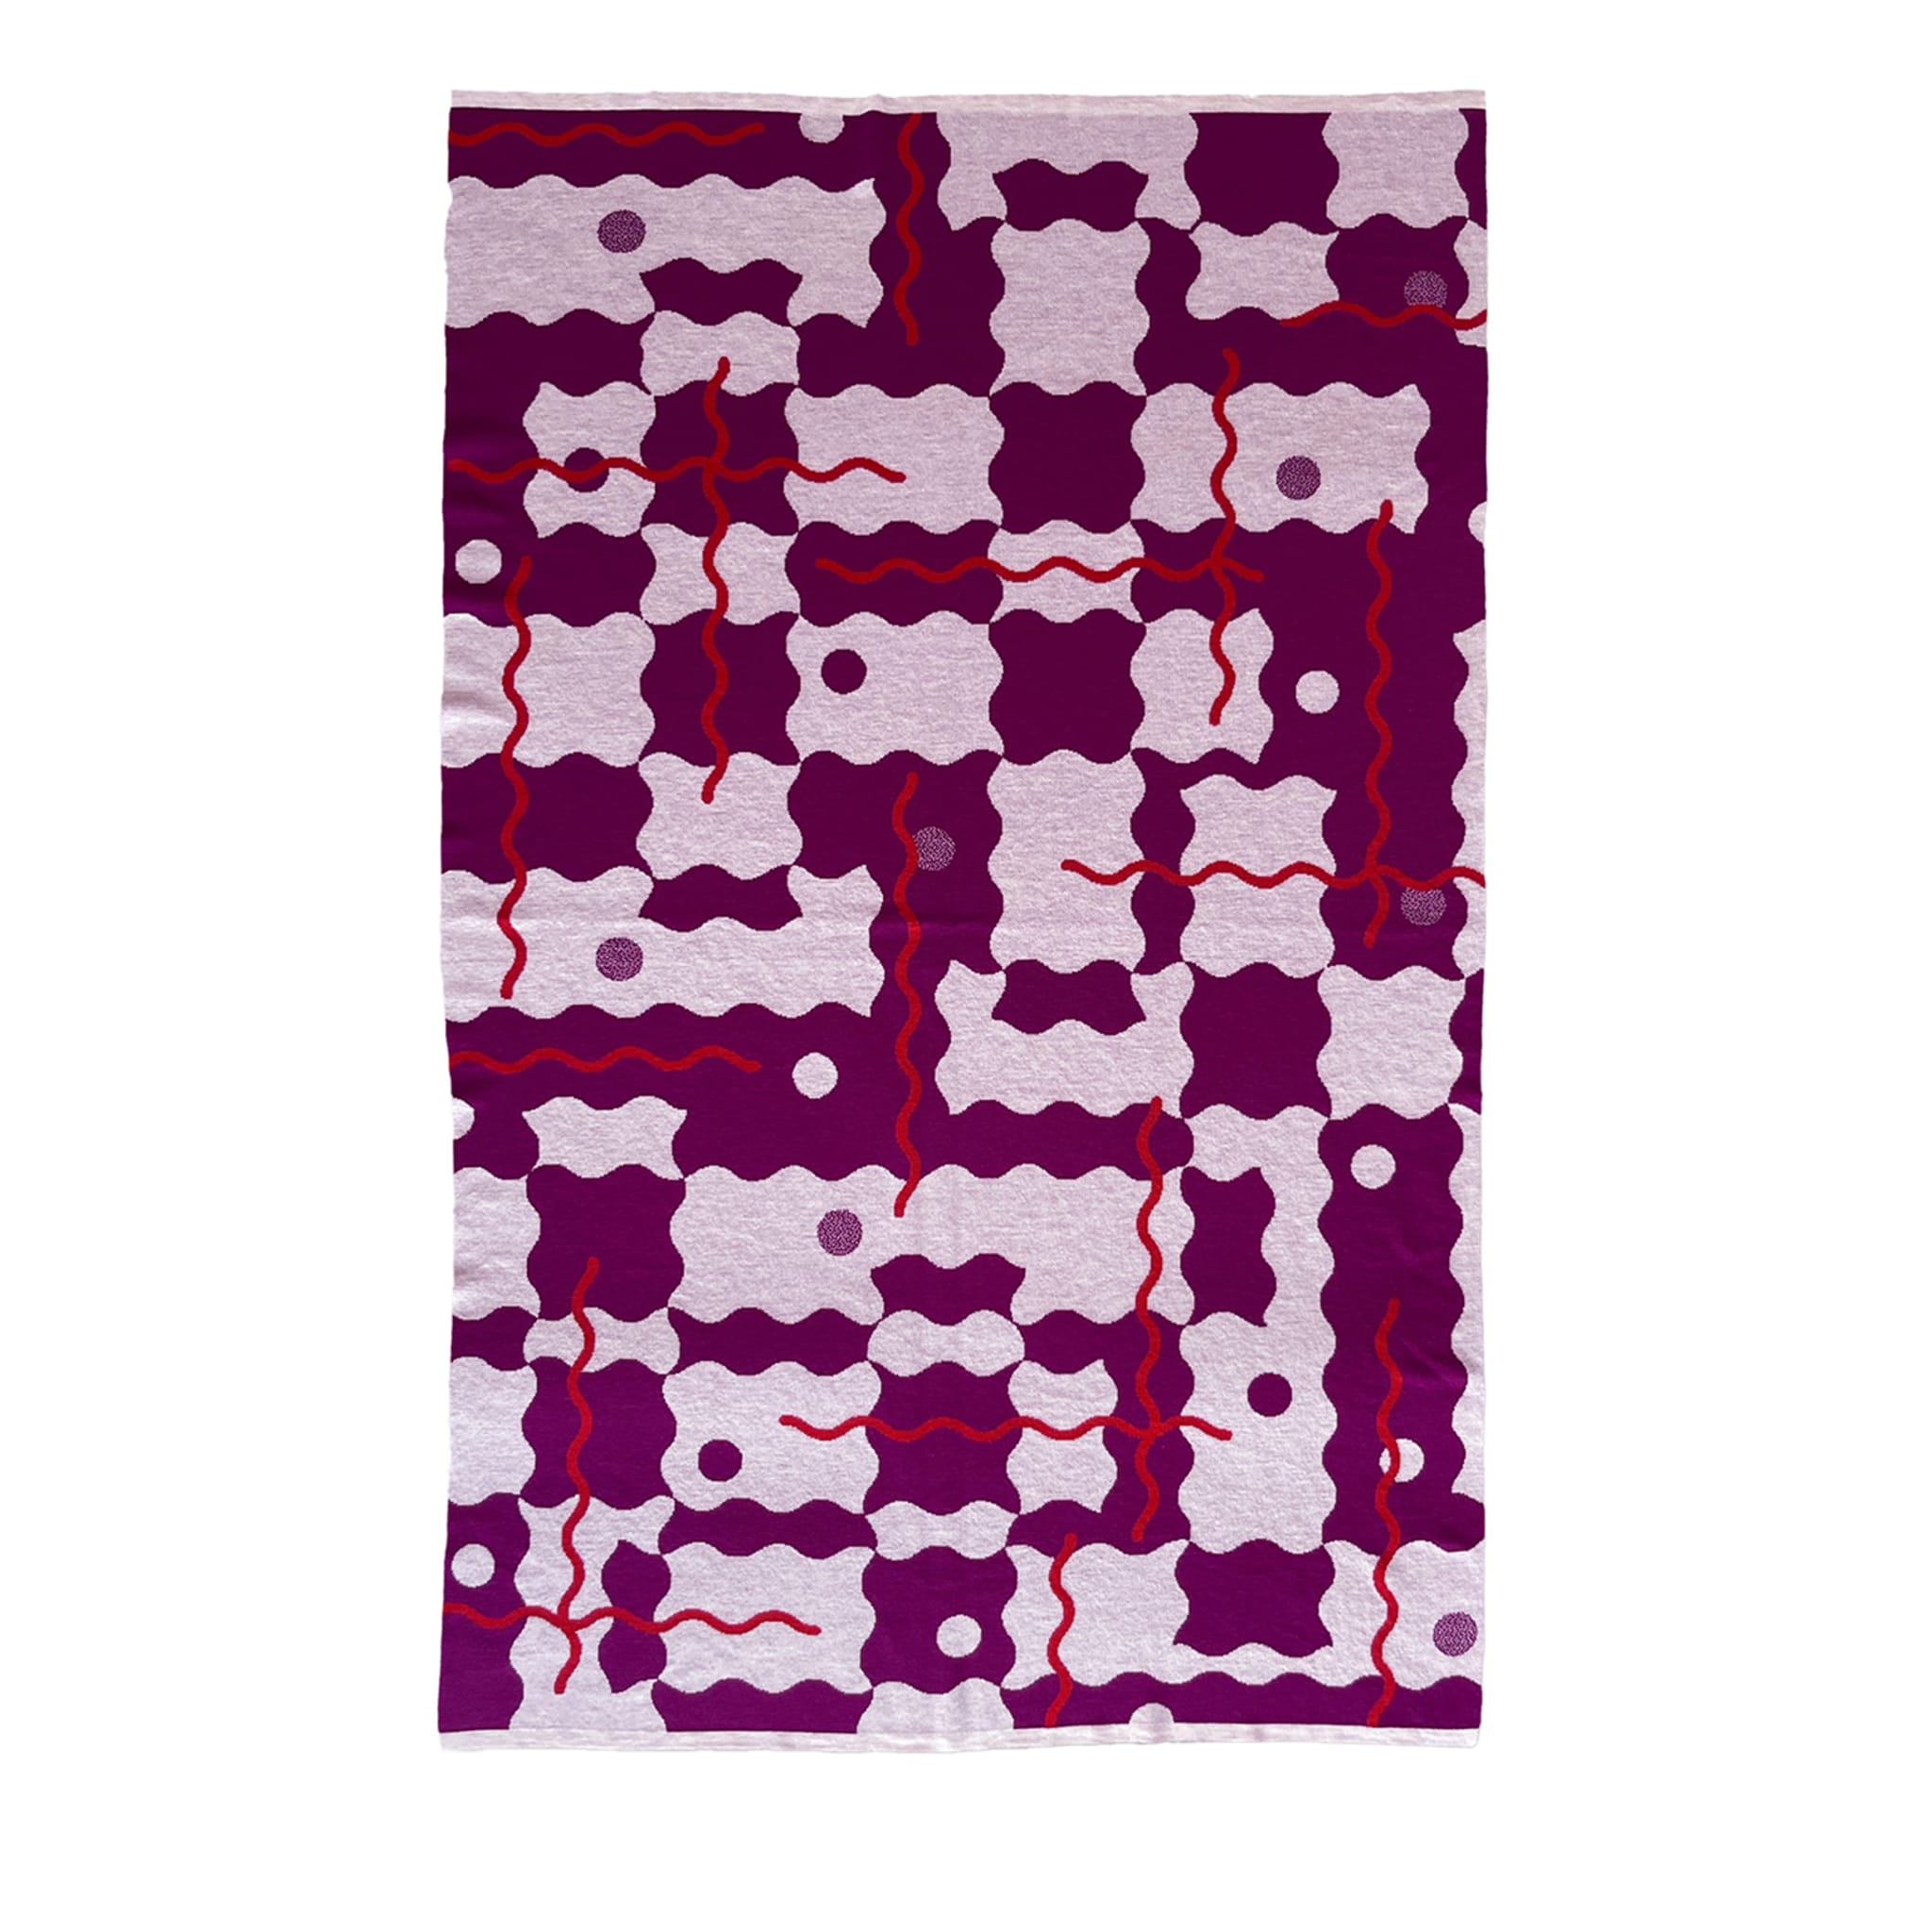 Trip 4 Mehrfarbige Decke/Wandteppich von Serena Confalonieri - Hauptansicht